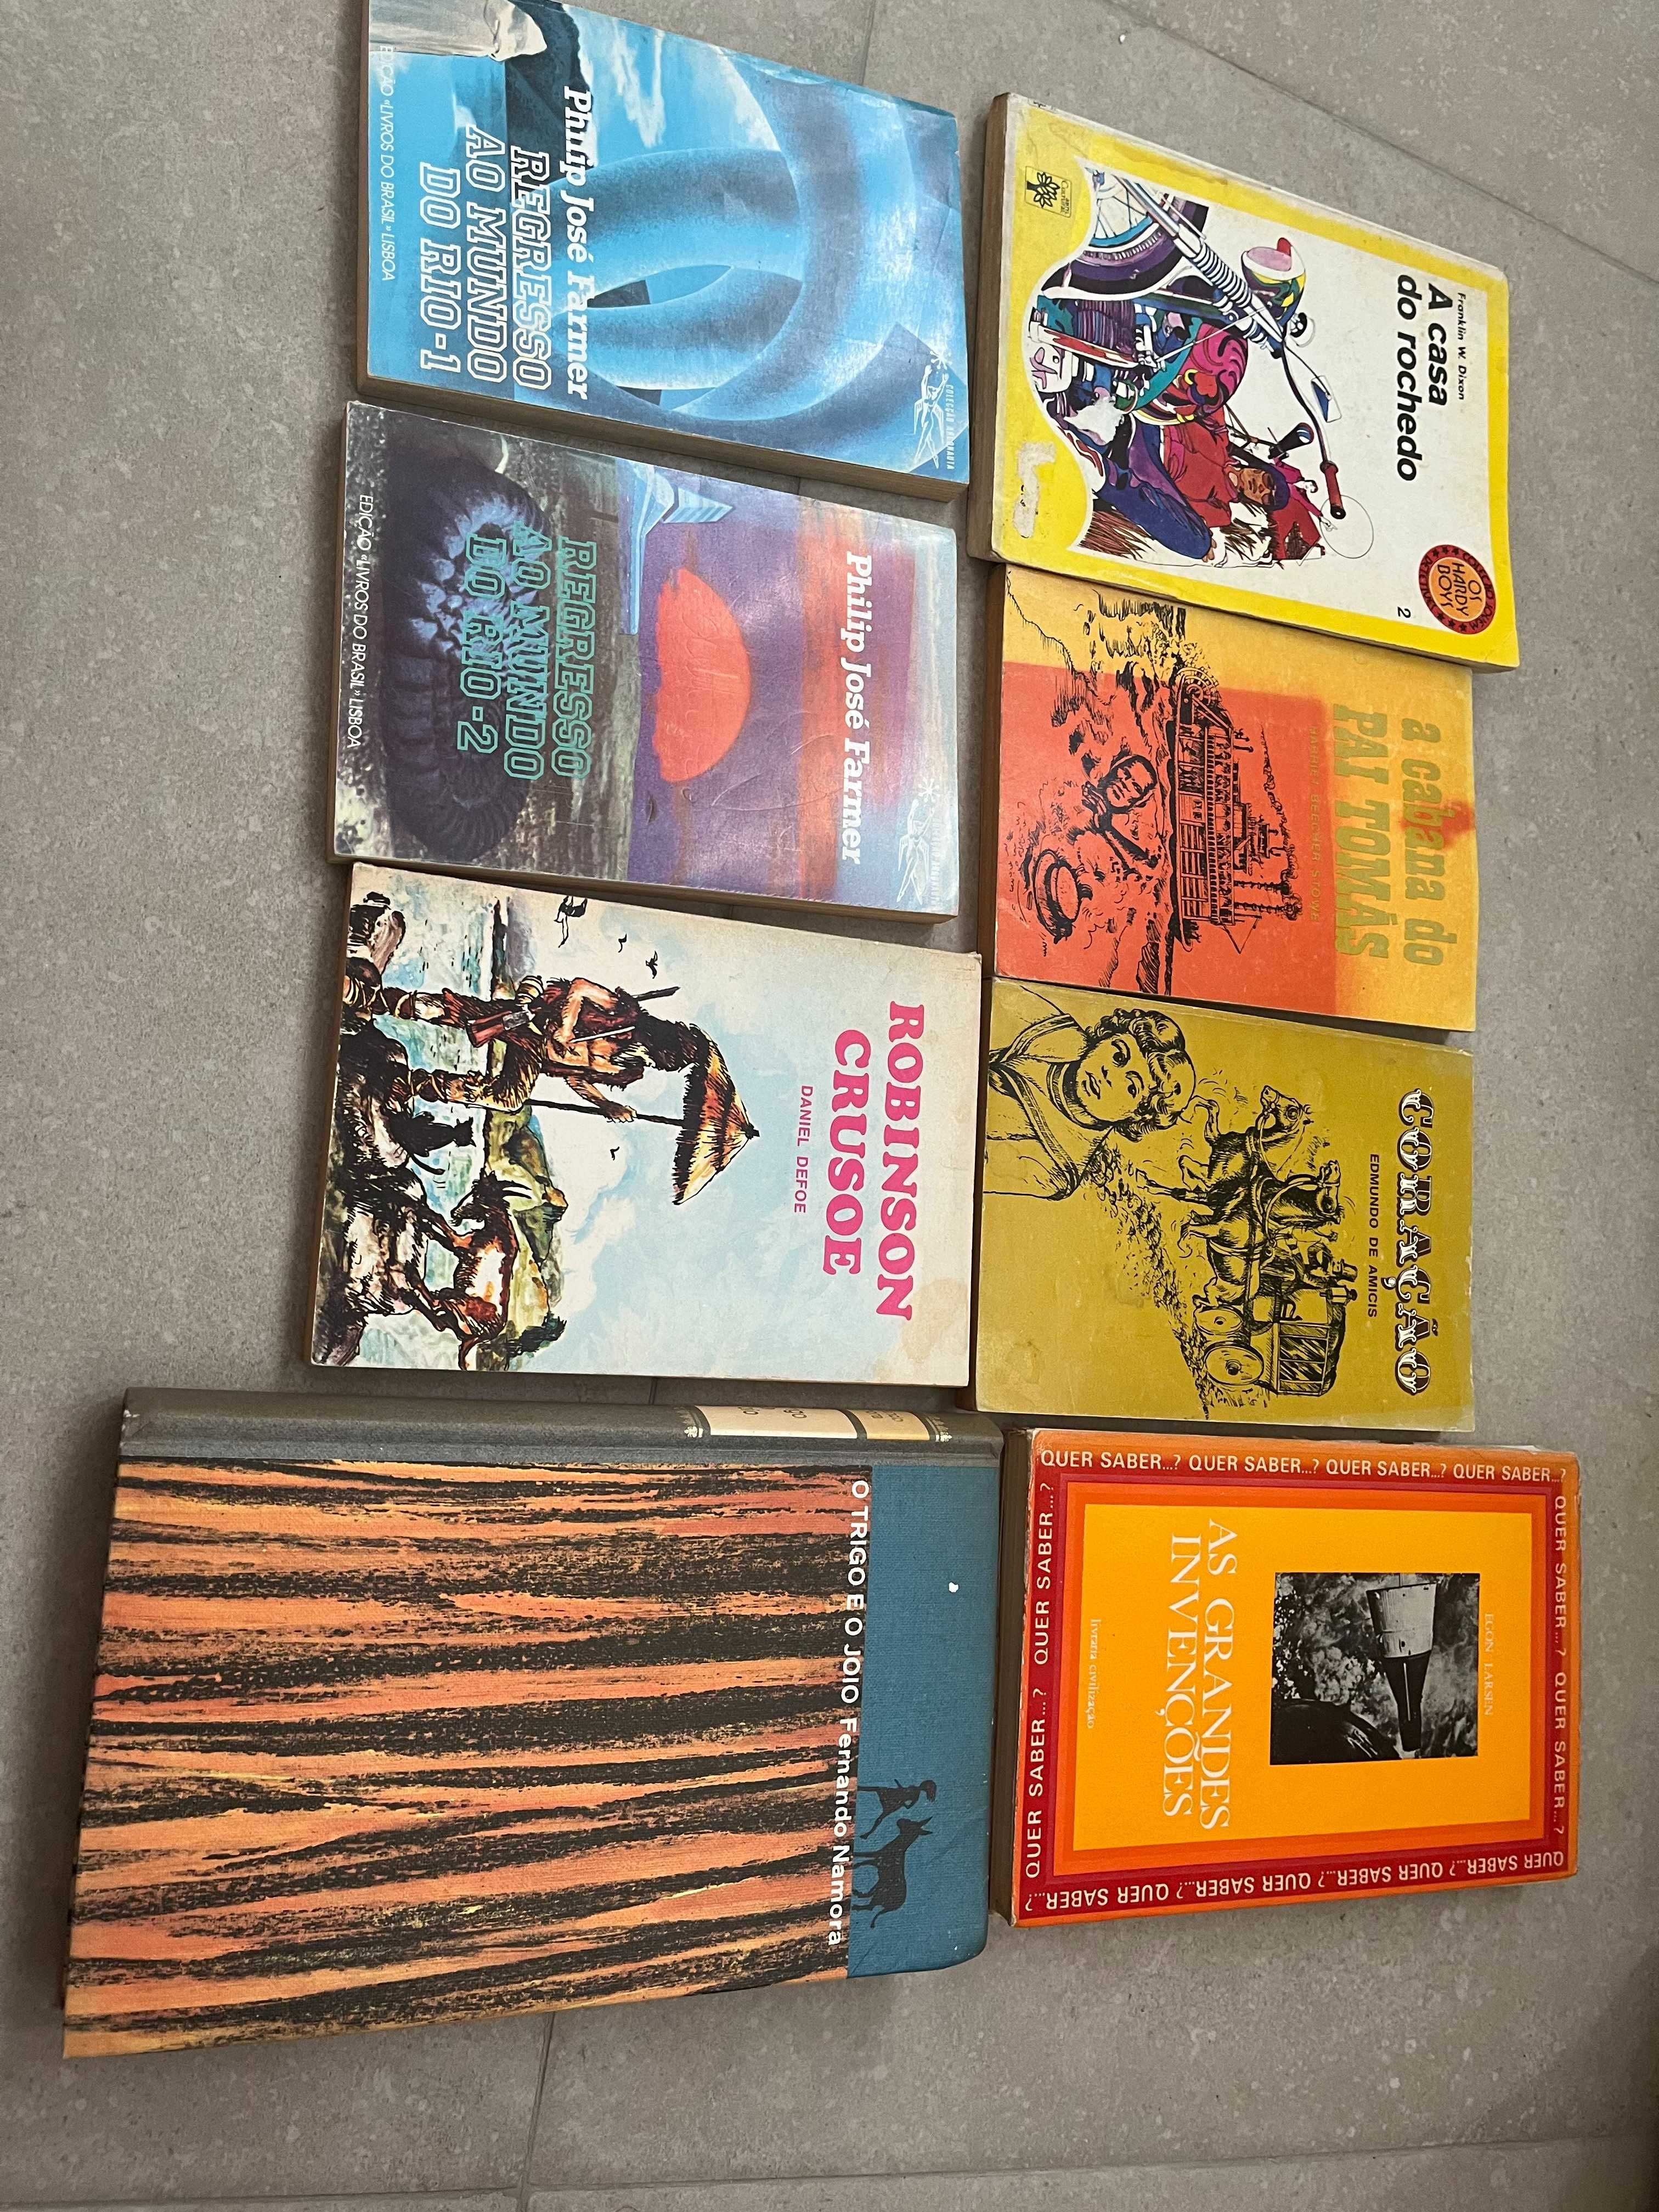 livros juvenis dos anos 50, 60 e 70